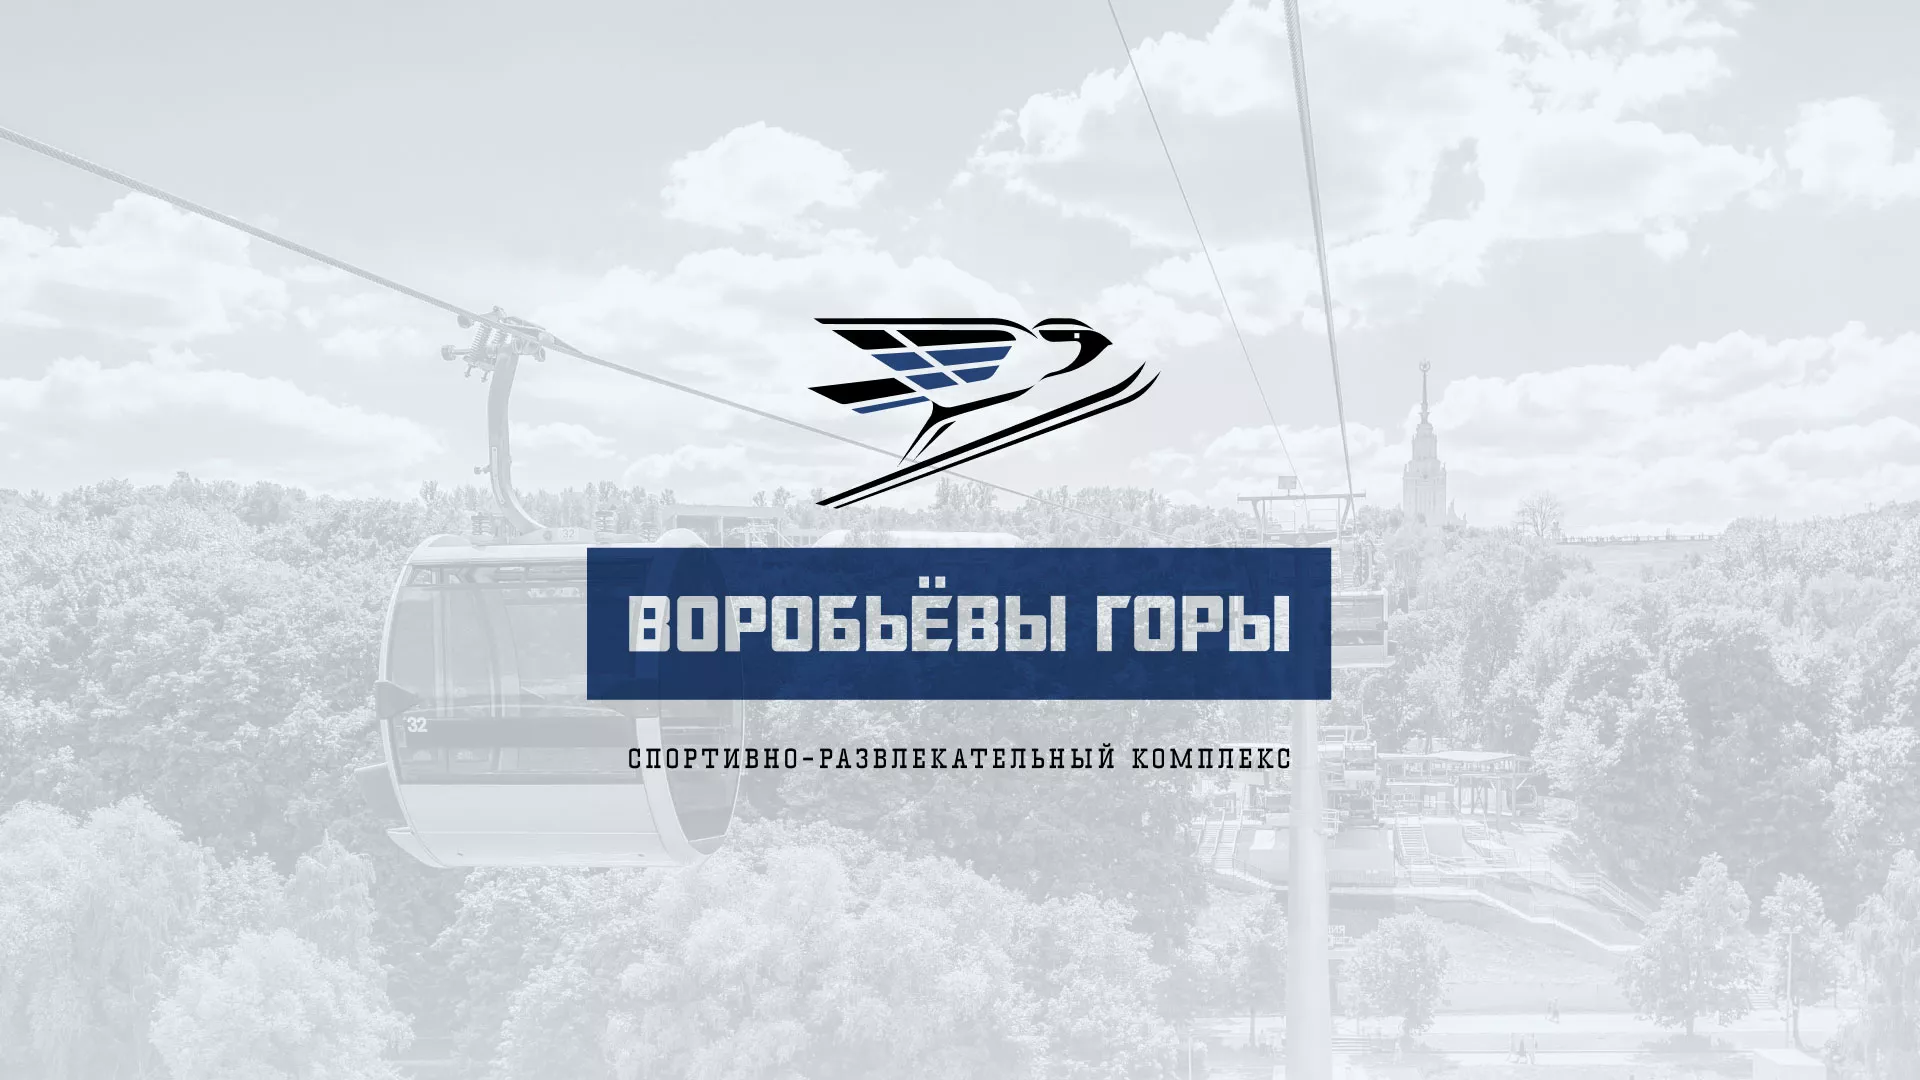 Разработка сайта в Боровске для спортивно-развлекательного комплекса «Воробьёвы горы»